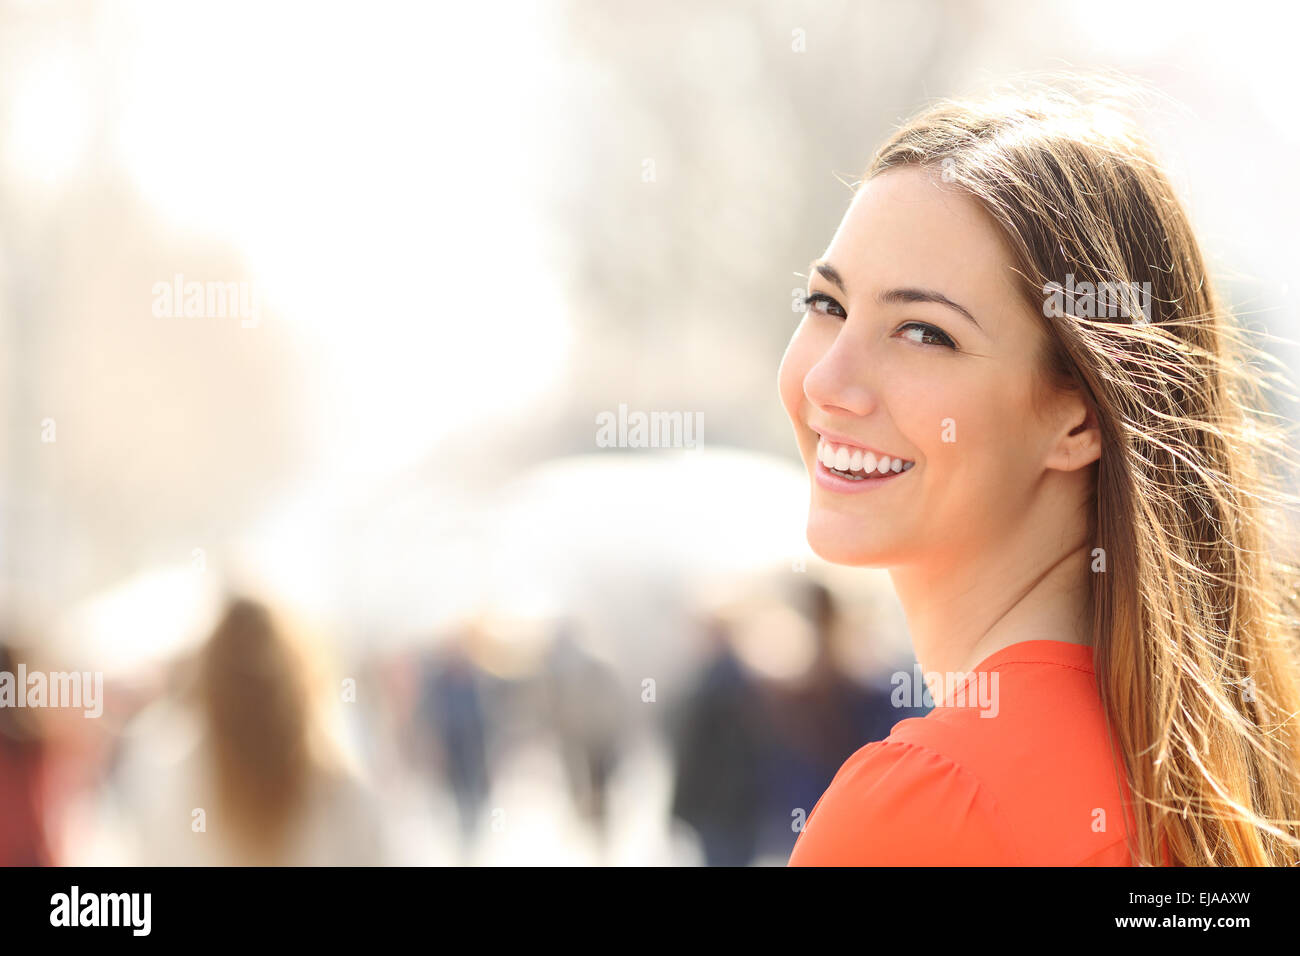 La bellezza della donna con sorriso perfetto e denti bianchi di camminare sulla strada e guardando la fotocamera Foto Stock